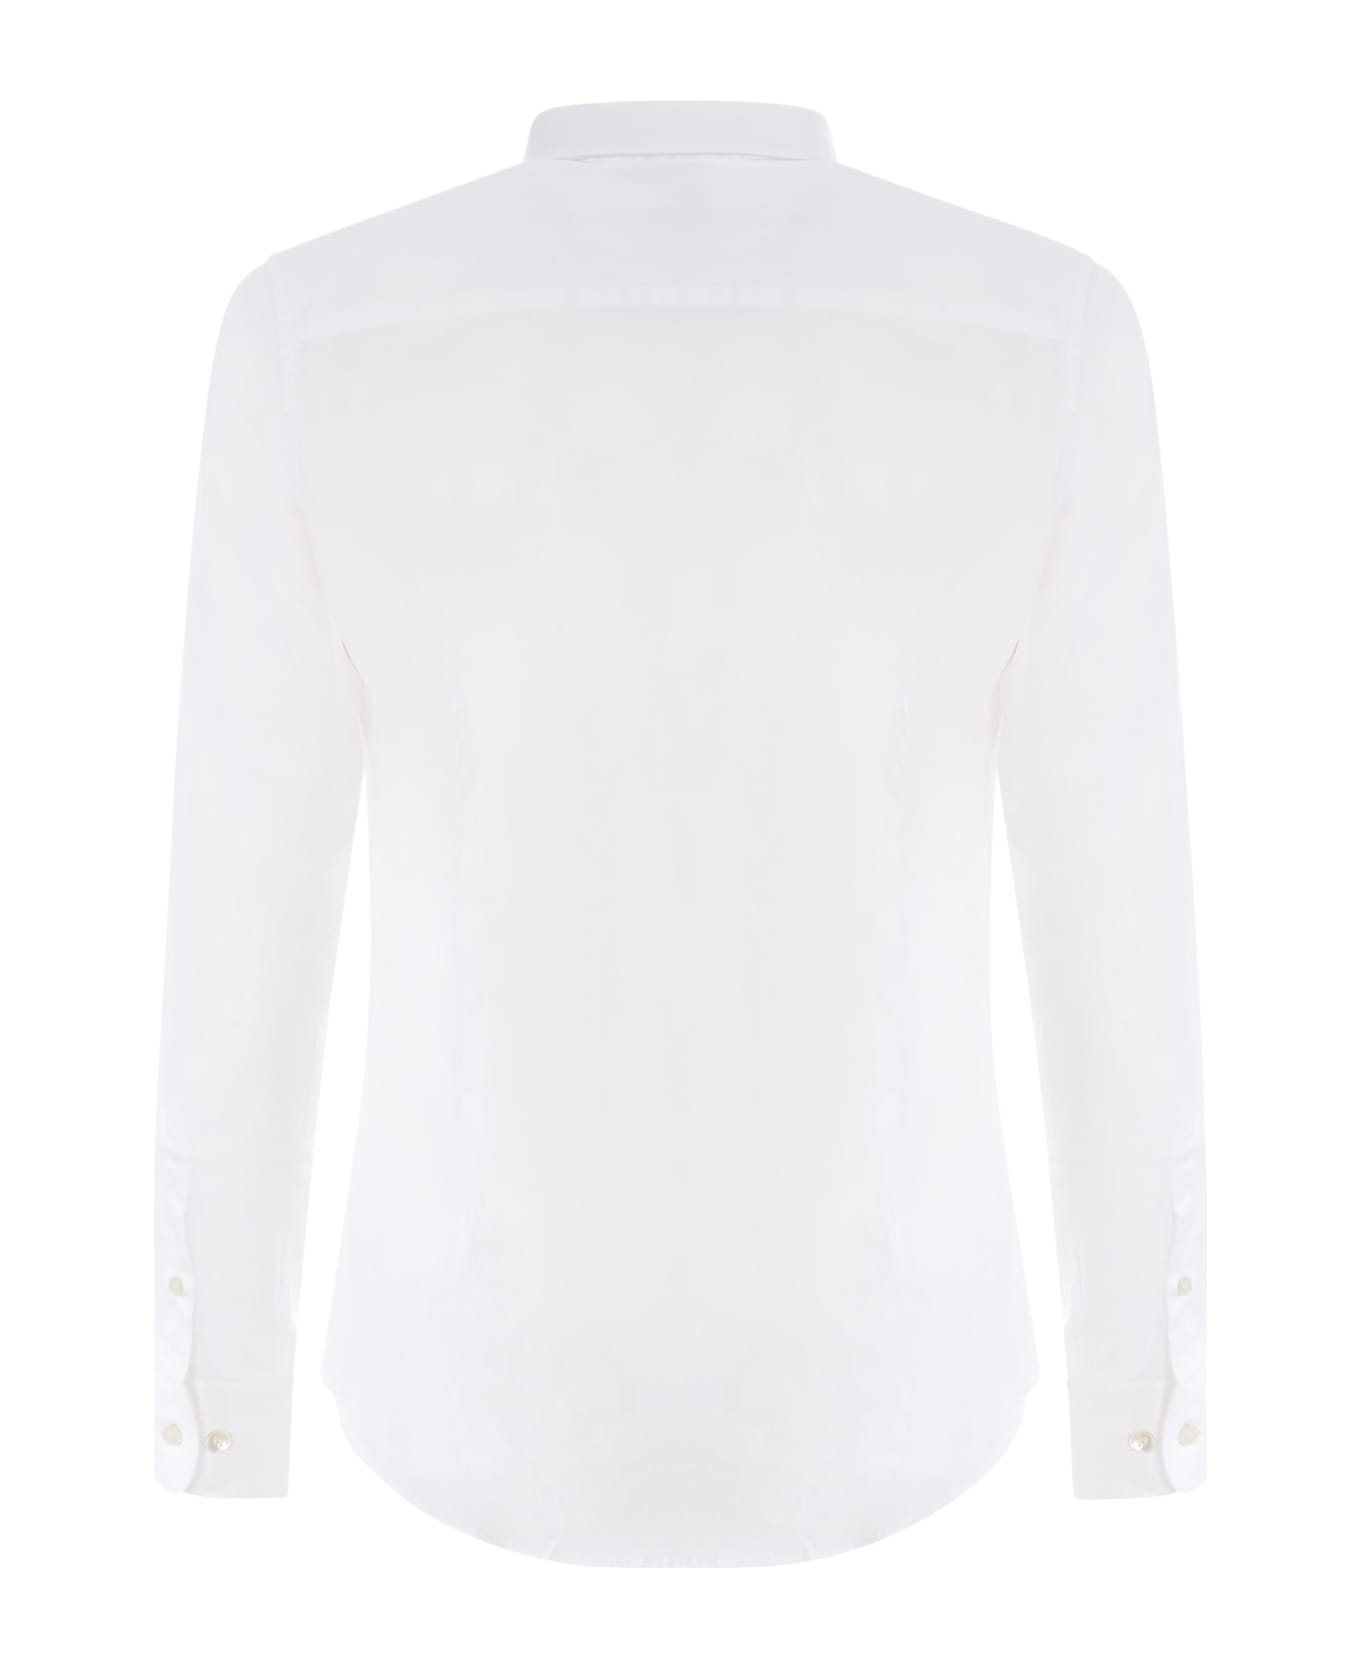 Giorgio Armani White Poplin Shirt Giorgio Armani - Bianco シャツ